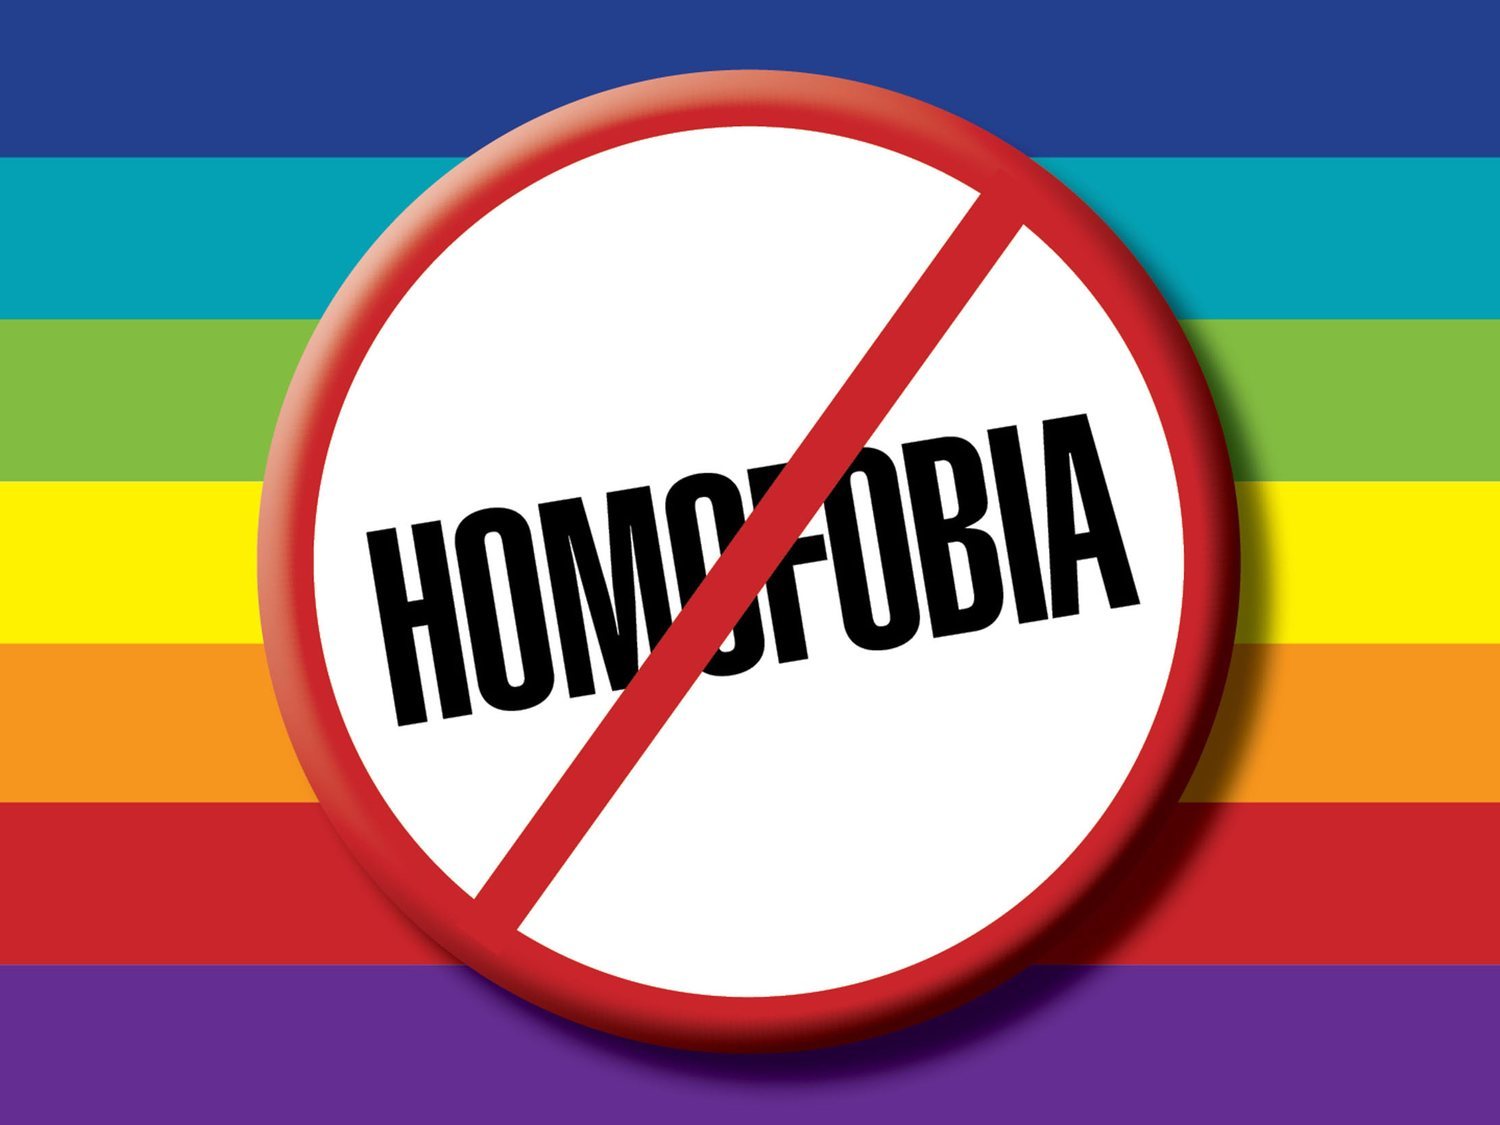 Una "doctora" asegura que puede "curar" la homosexualidad con supositorios